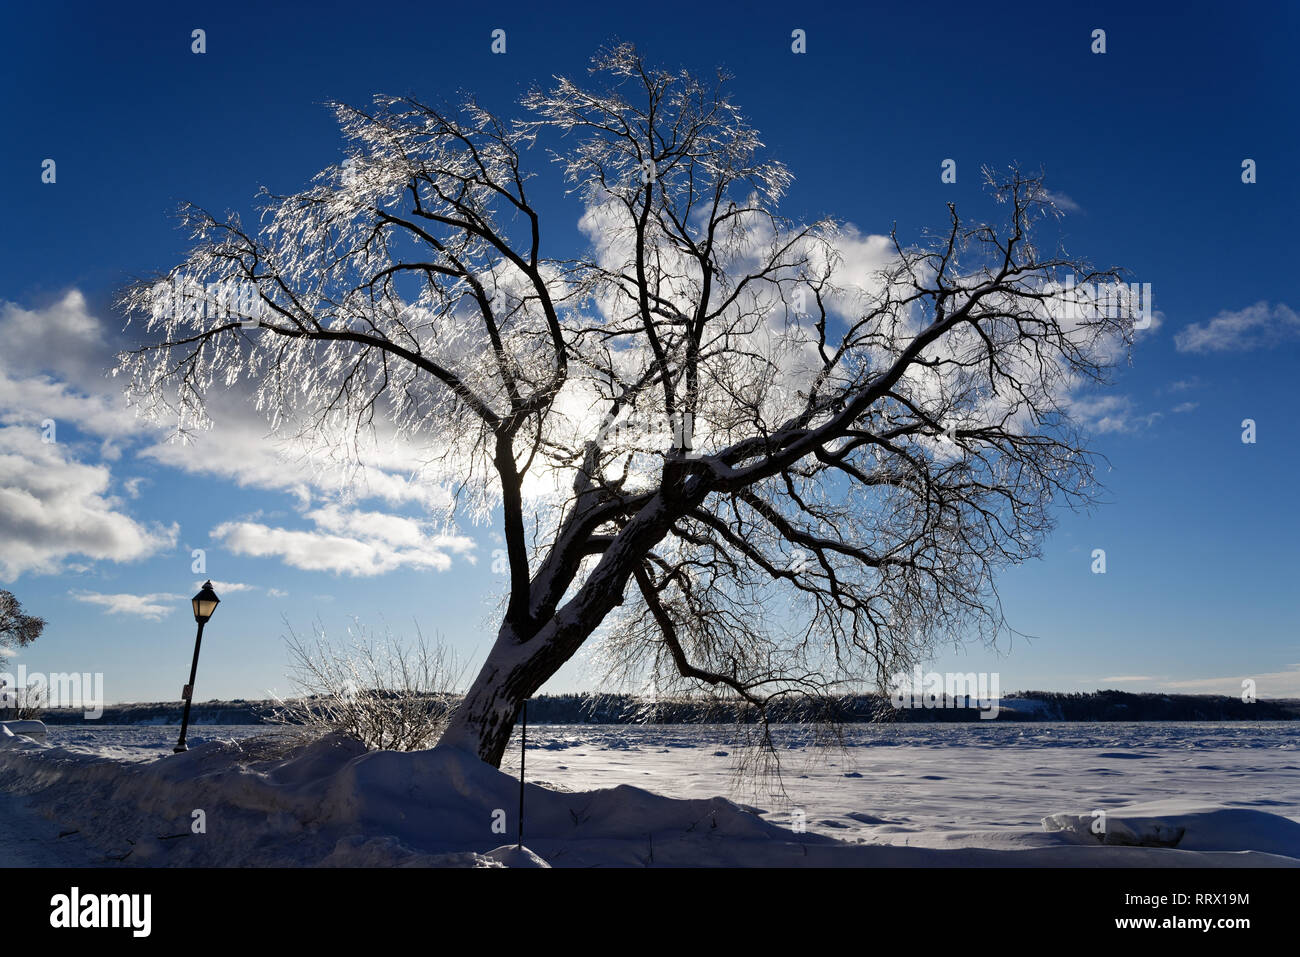 Un arbre couvert de glace après la pluie verglaçante brillants dans le soleil à Québec, Canada avec le fleuve Saint-Laurent au-delà Banque D'Images